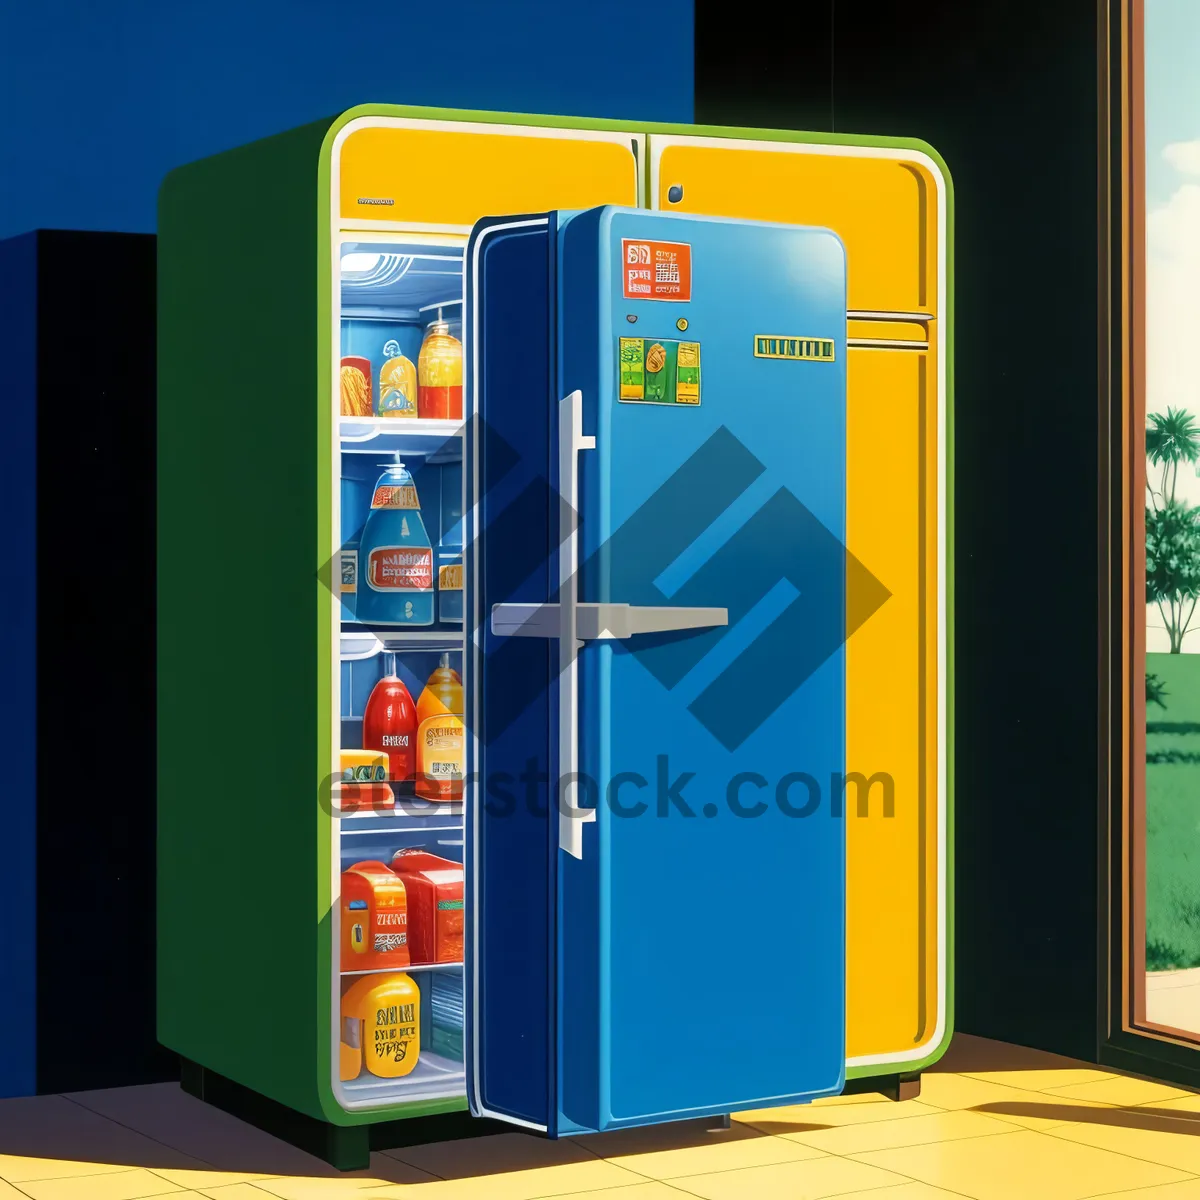 Picture of Digital Vending Machine - Efficient 3D Business Device